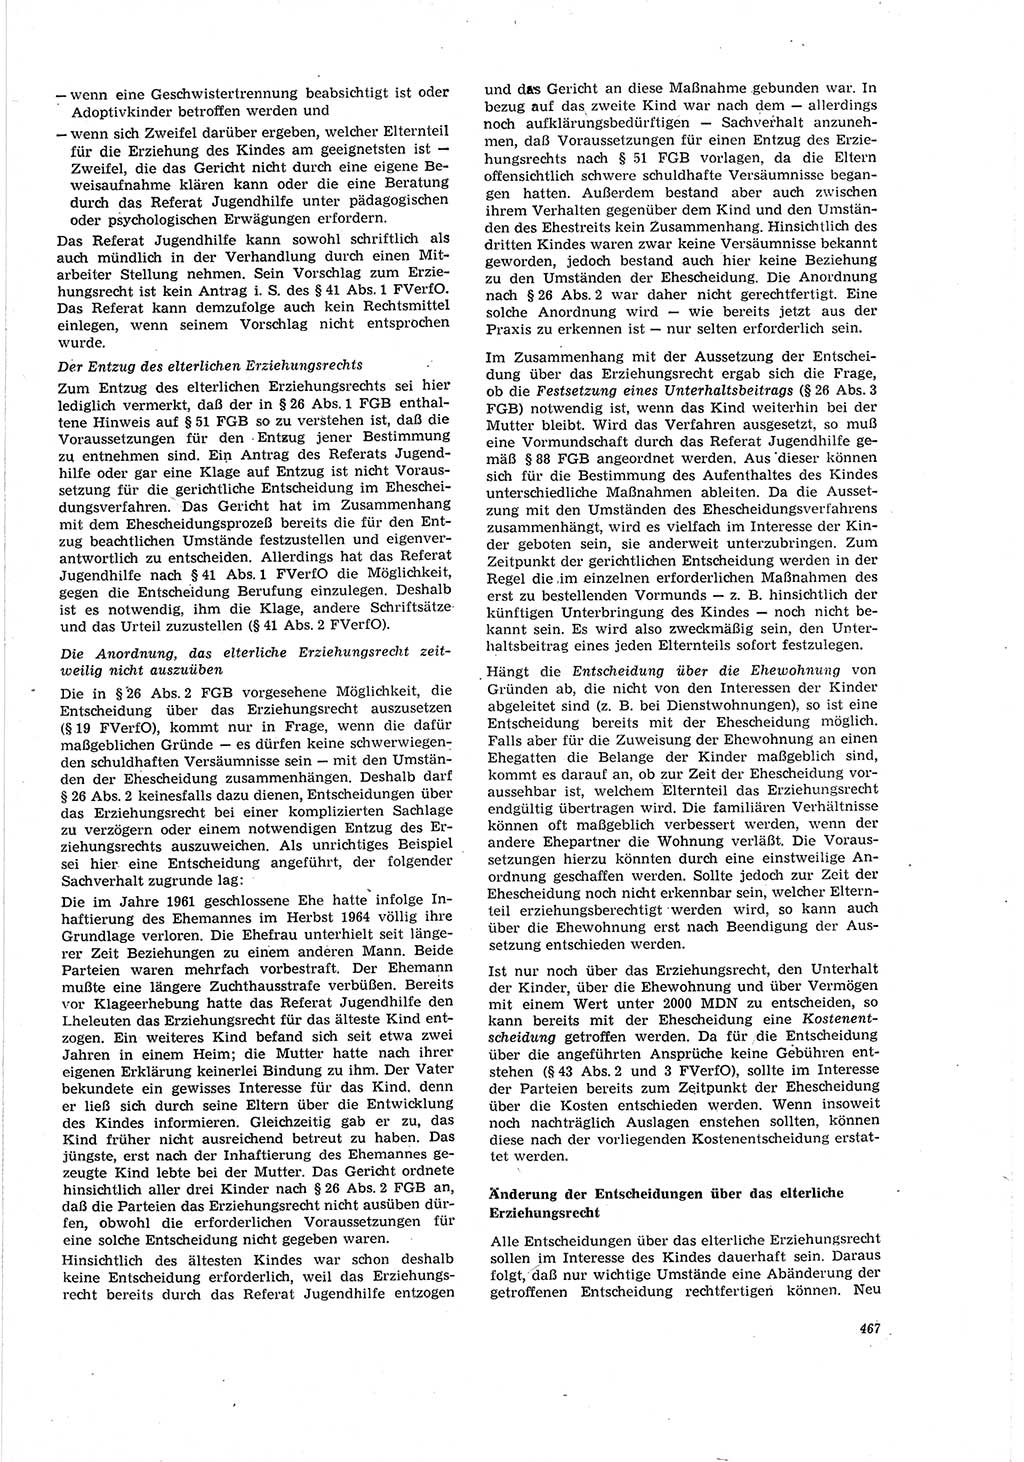 Neue Justiz (NJ), Zeitschrift für Recht und Rechtswissenschaft [Deutsche Demokratische Republik (DDR)], 20. Jahrgang 1966, Seite 467 (NJ DDR 1966, S. 467)